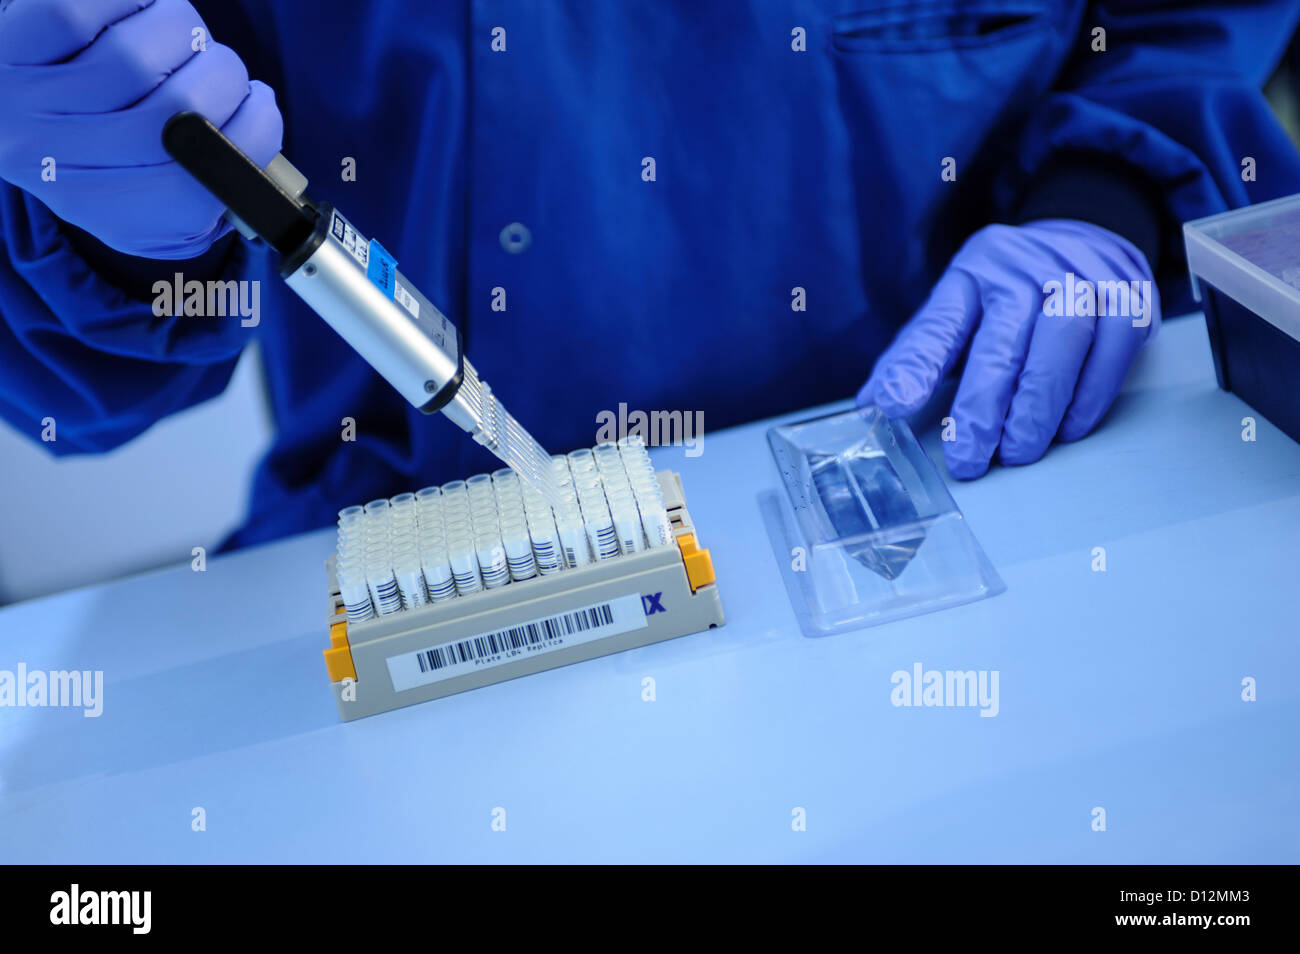 Chercheur scientifique à l'aide d'une pipette multi pour administrer les échantillons génétiques dans une même sortie échantillon dans un laboratoire scientifique. Banque D'Images